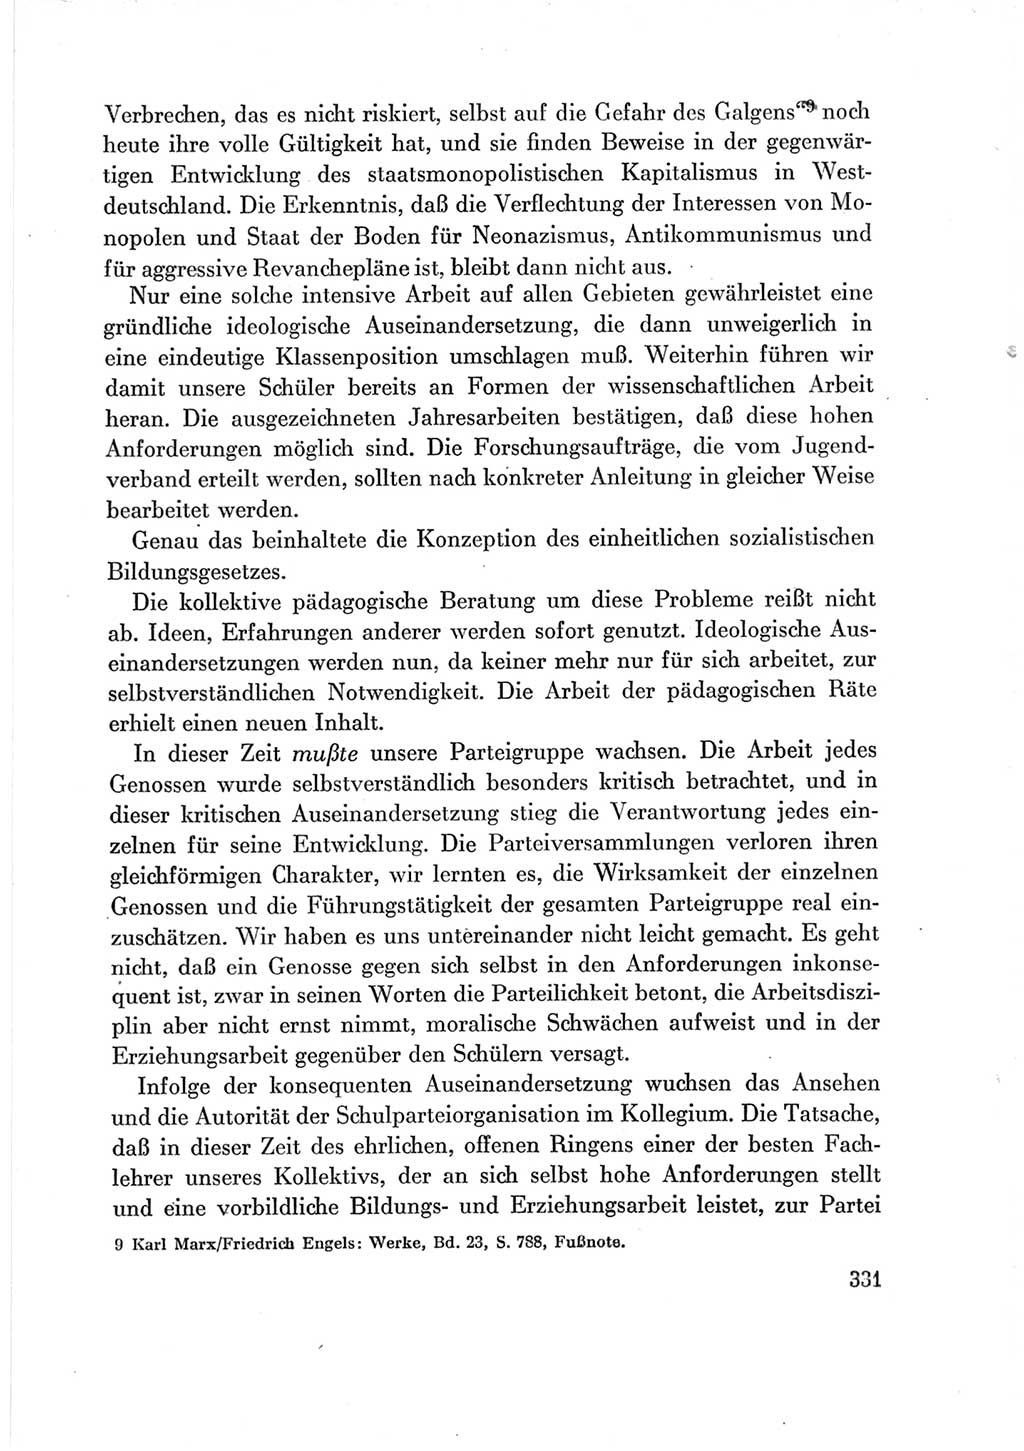 Protokoll der Verhandlungen des Ⅶ. Parteitages der Sozialistischen Einheitspartei Deutschlands (SED) [Deutsche Demokratische Republik (DDR)] 1967, Band Ⅲ, Seite 331 (Prot. Verh. Ⅶ. PT SED DDR 1967, Bd. Ⅲ, S. 331)